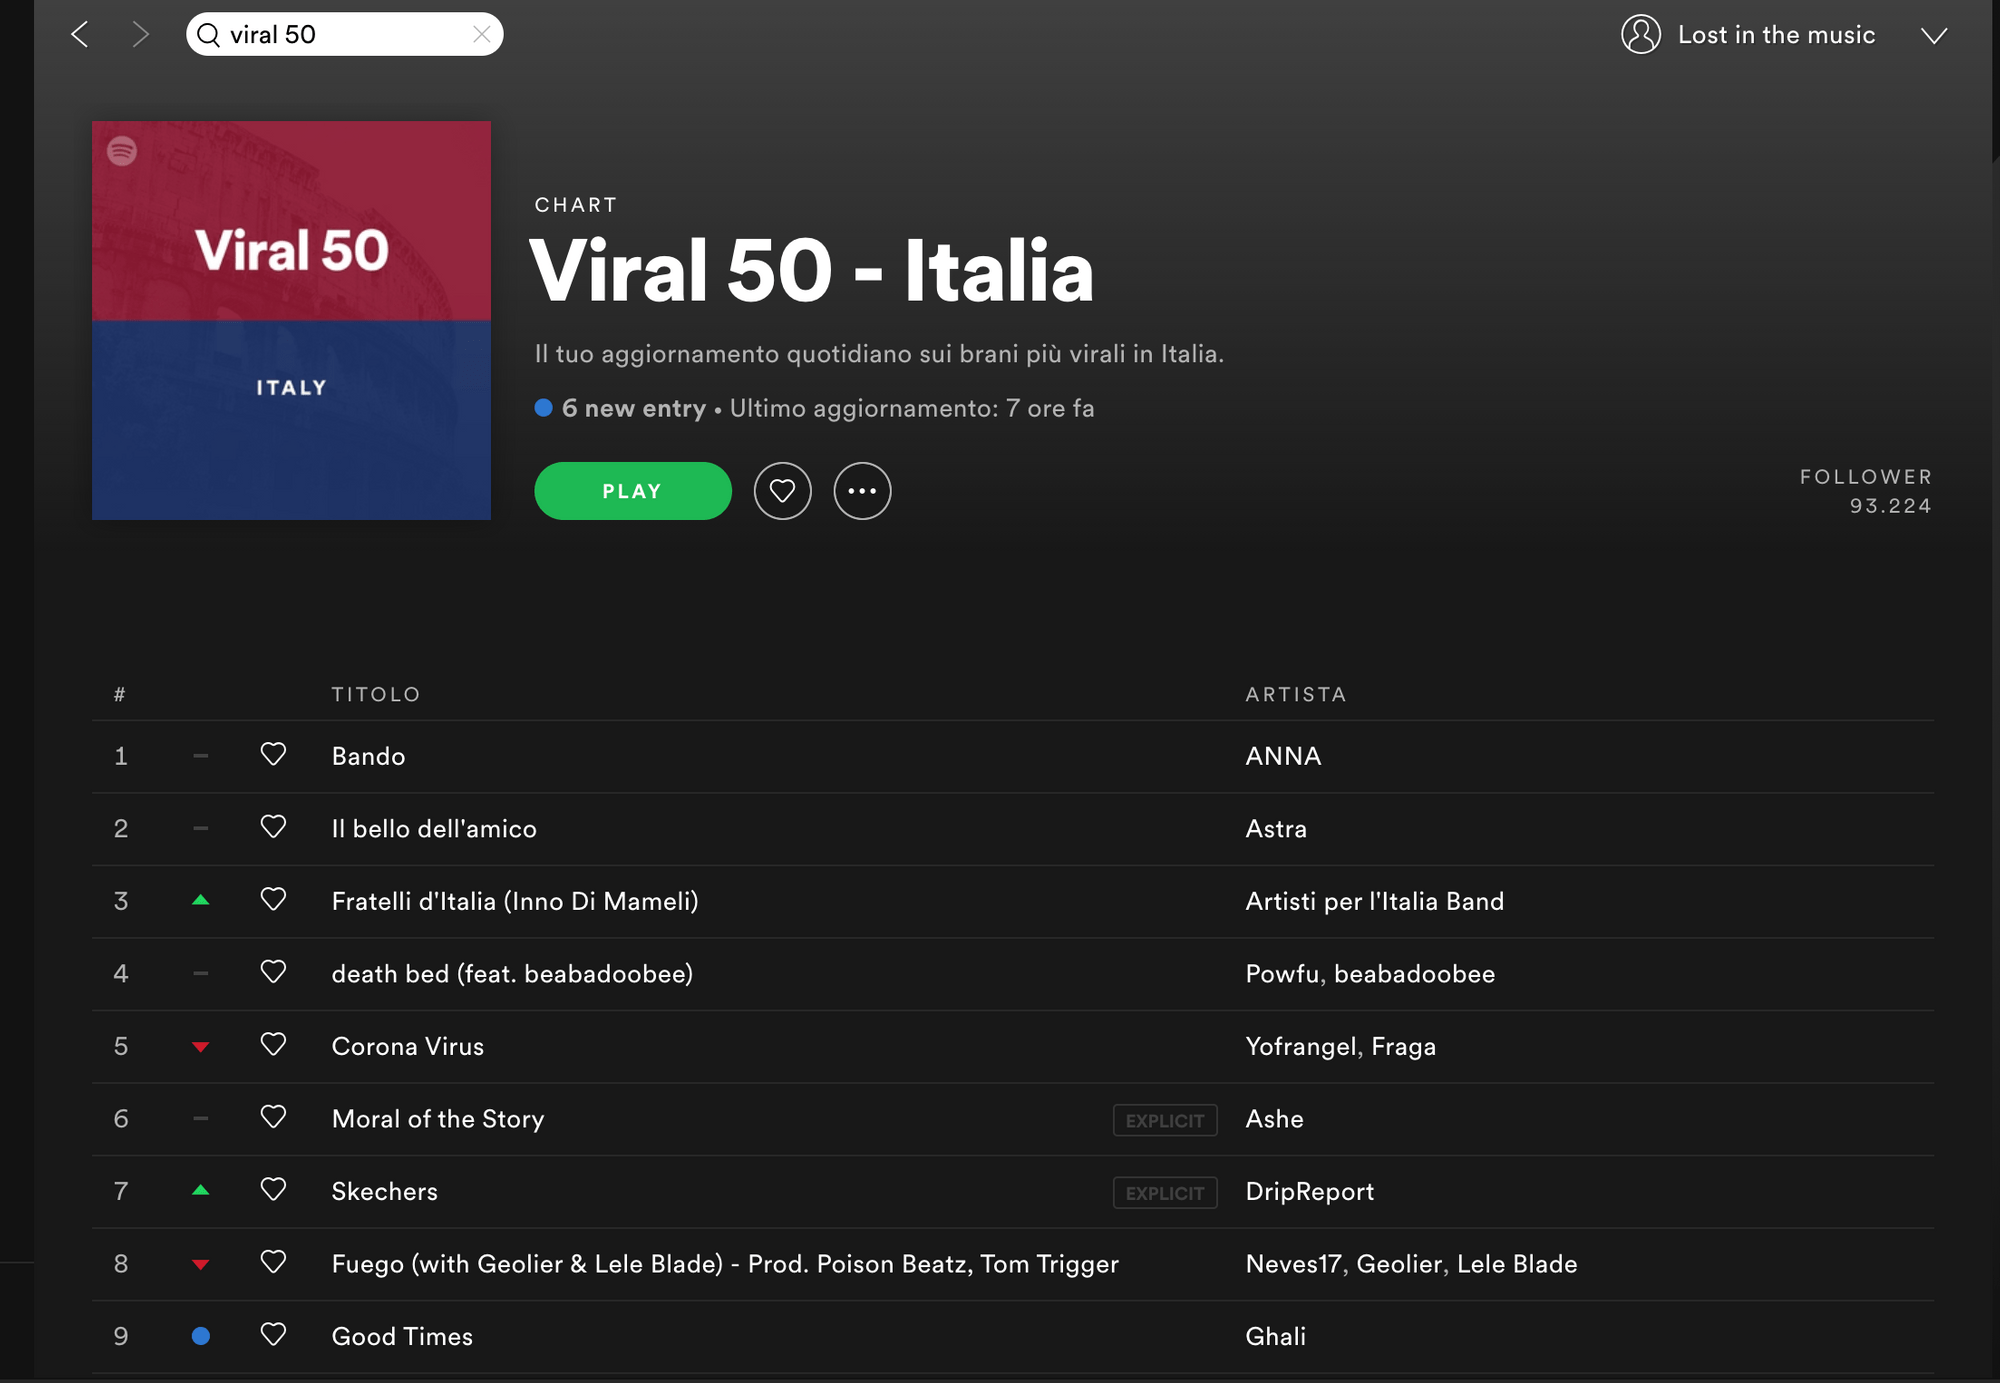 Come faccio ad entrare in VIRAL 50 ITALIA?